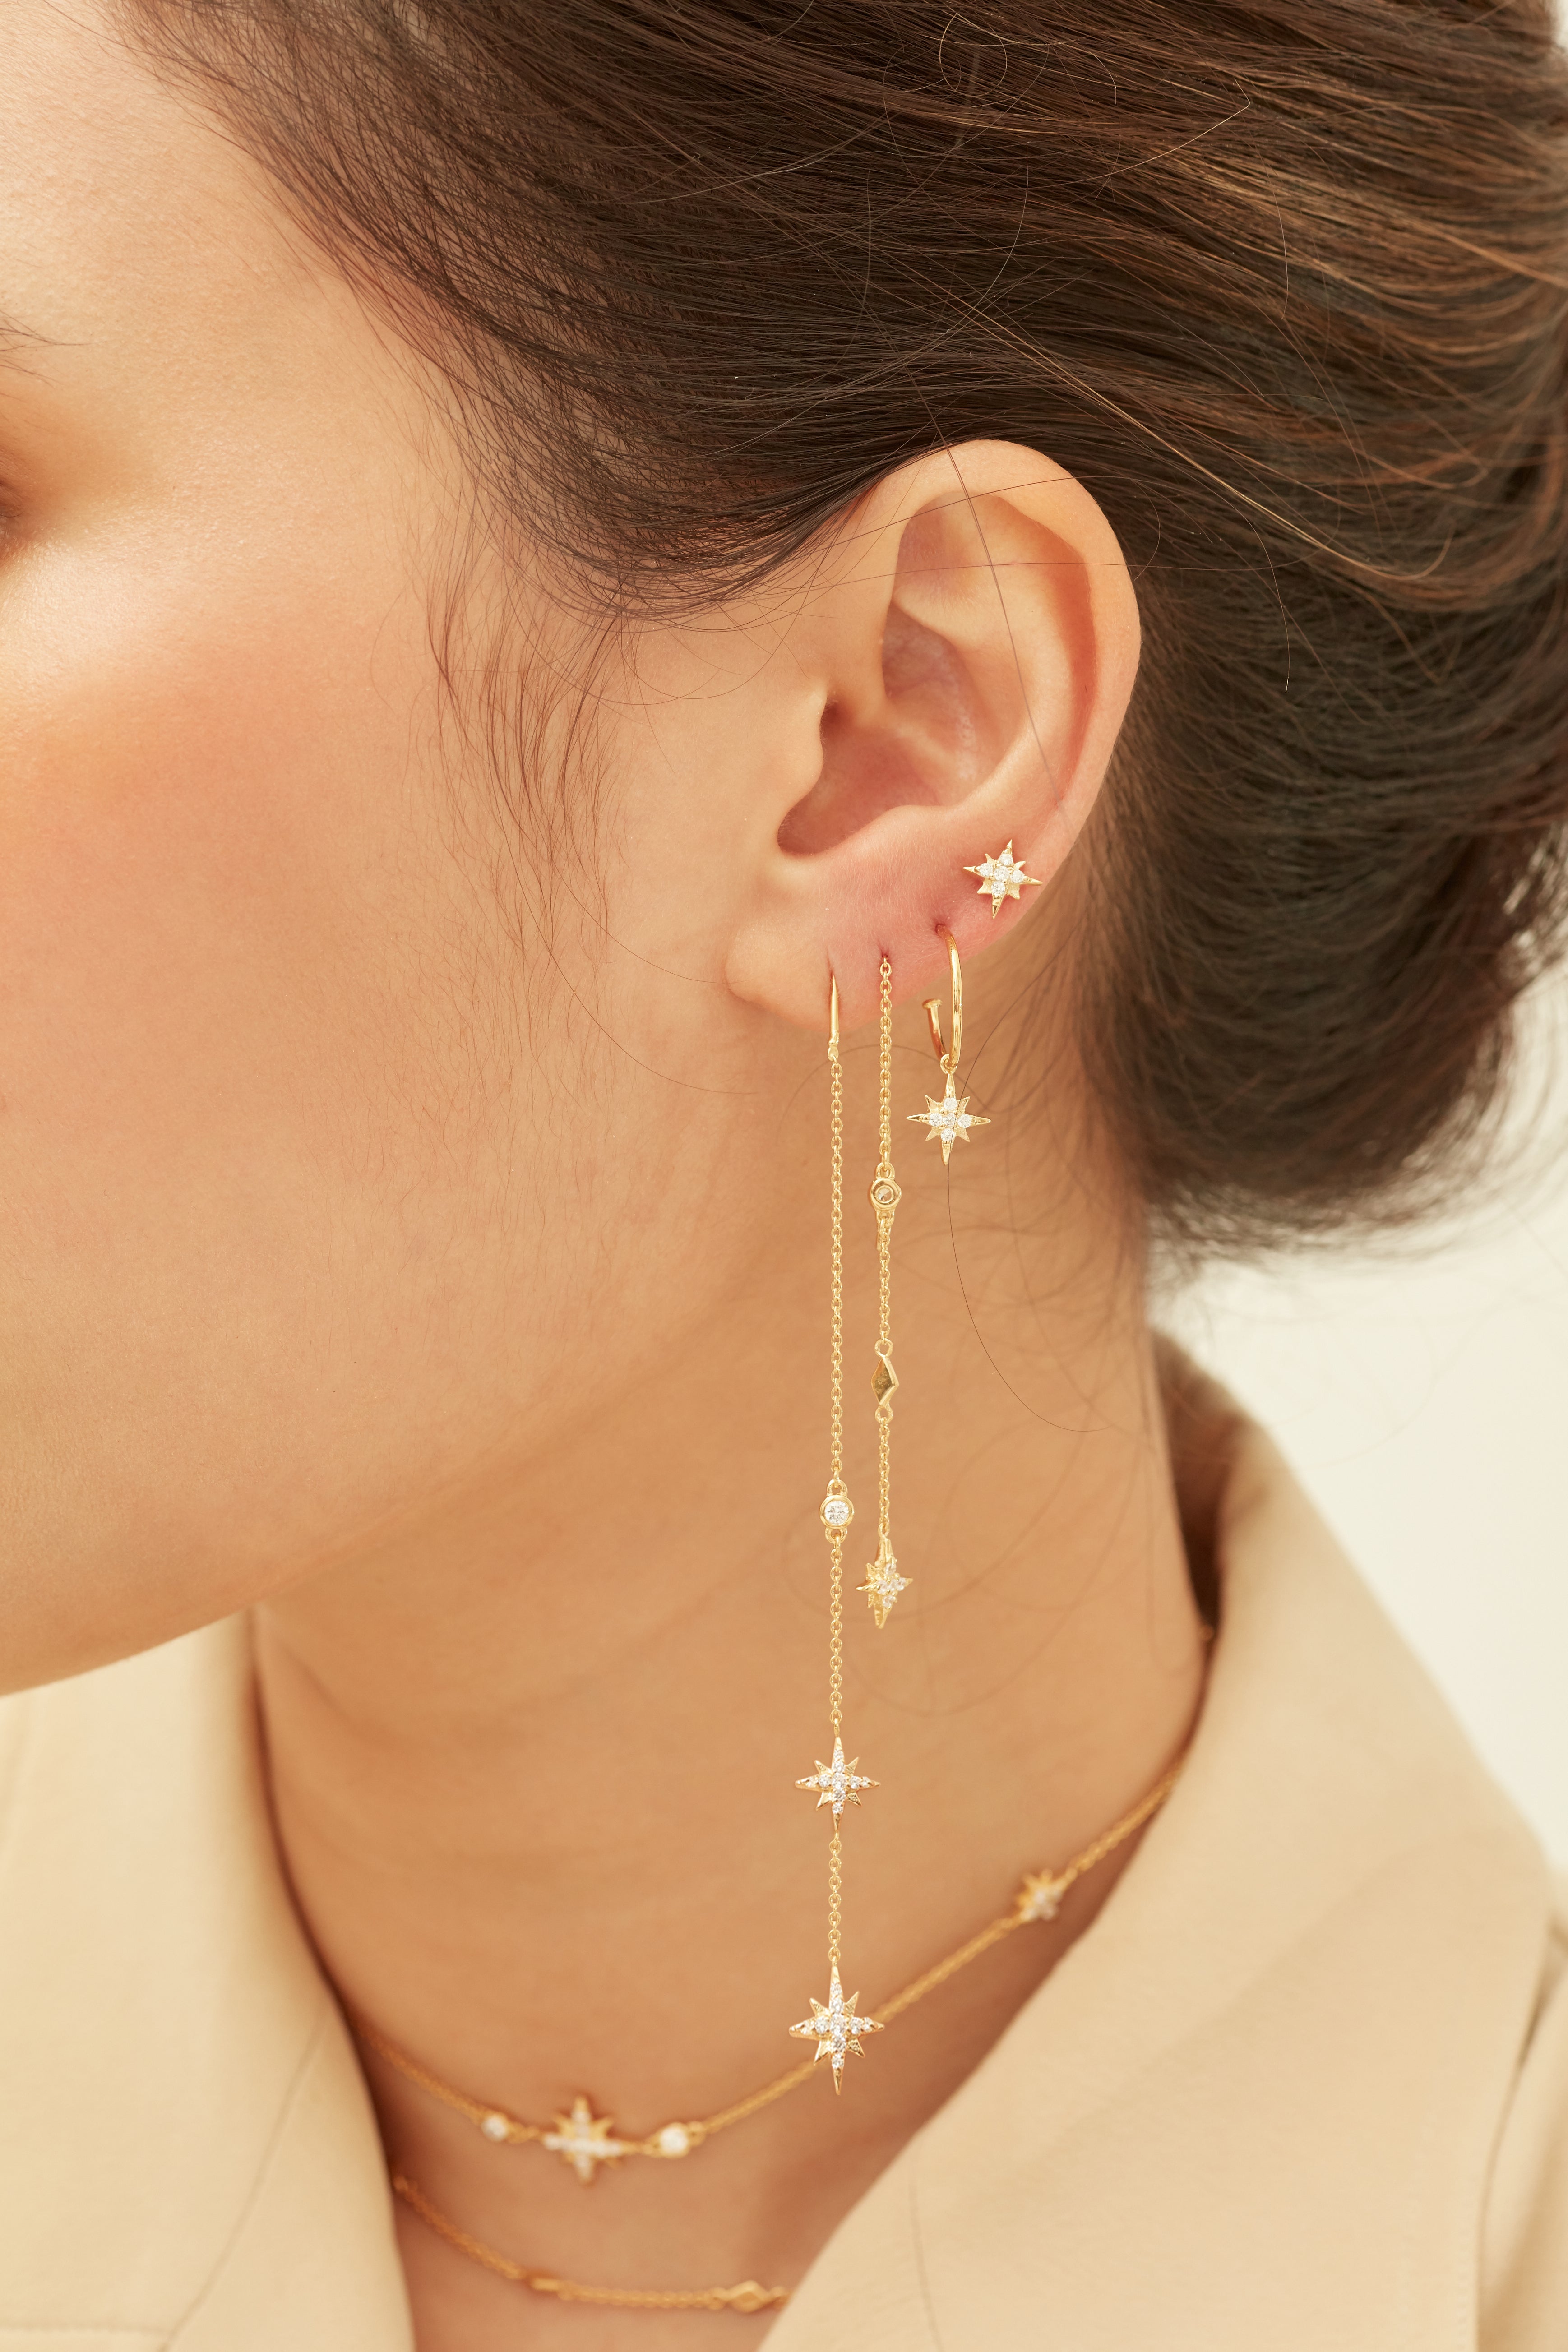 Celestial Stud Earrings - Whitegold